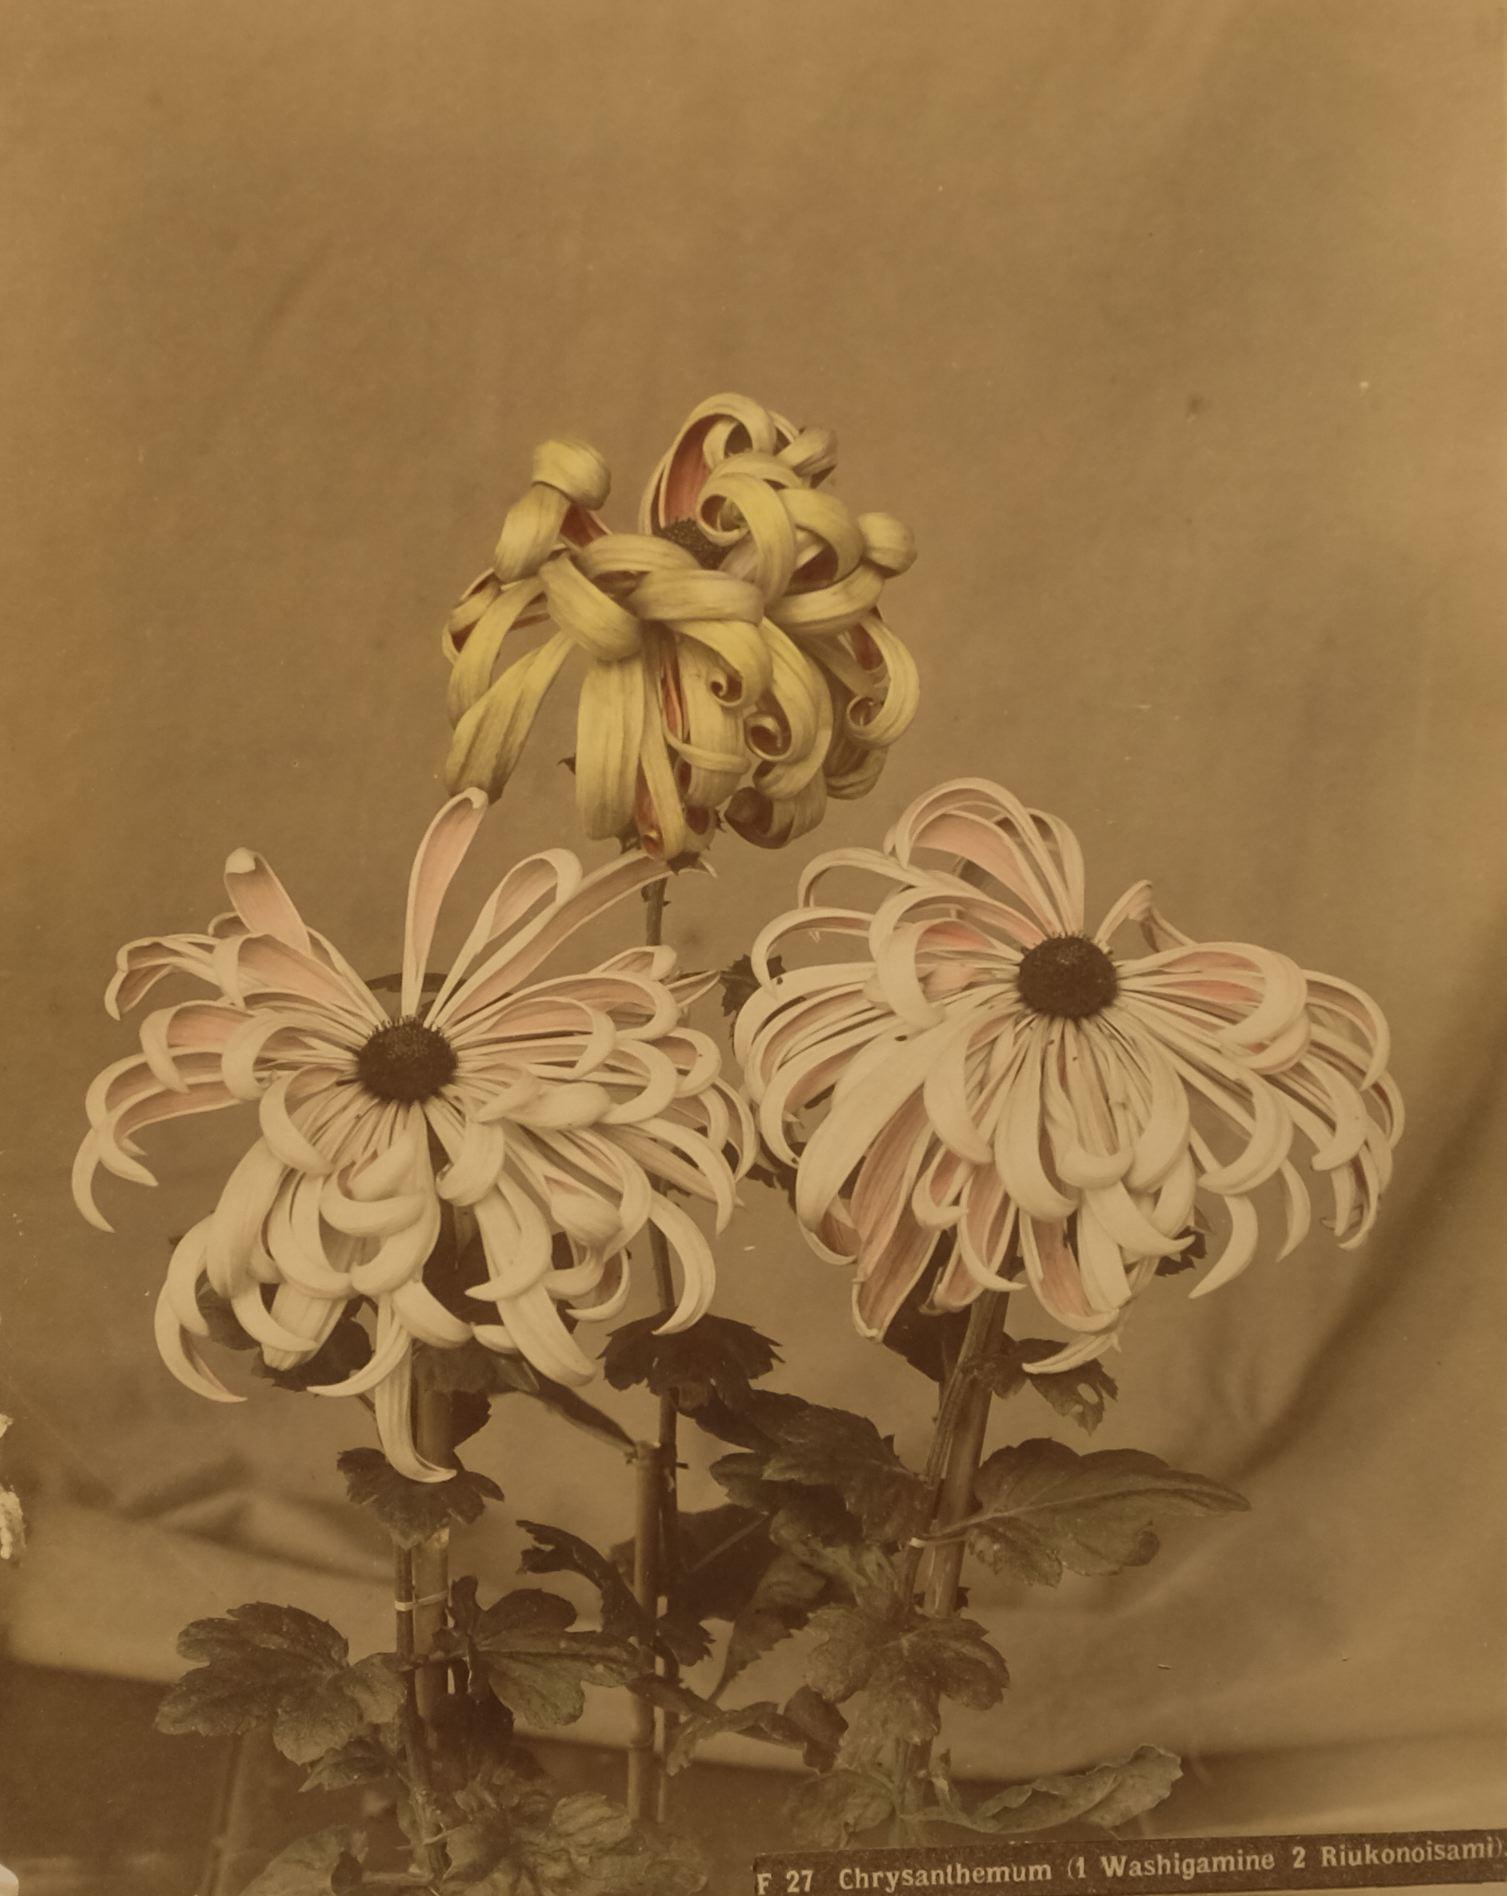 Chrysanthemum (1 Washigamine 2 Riukonoisami), c. 1880's